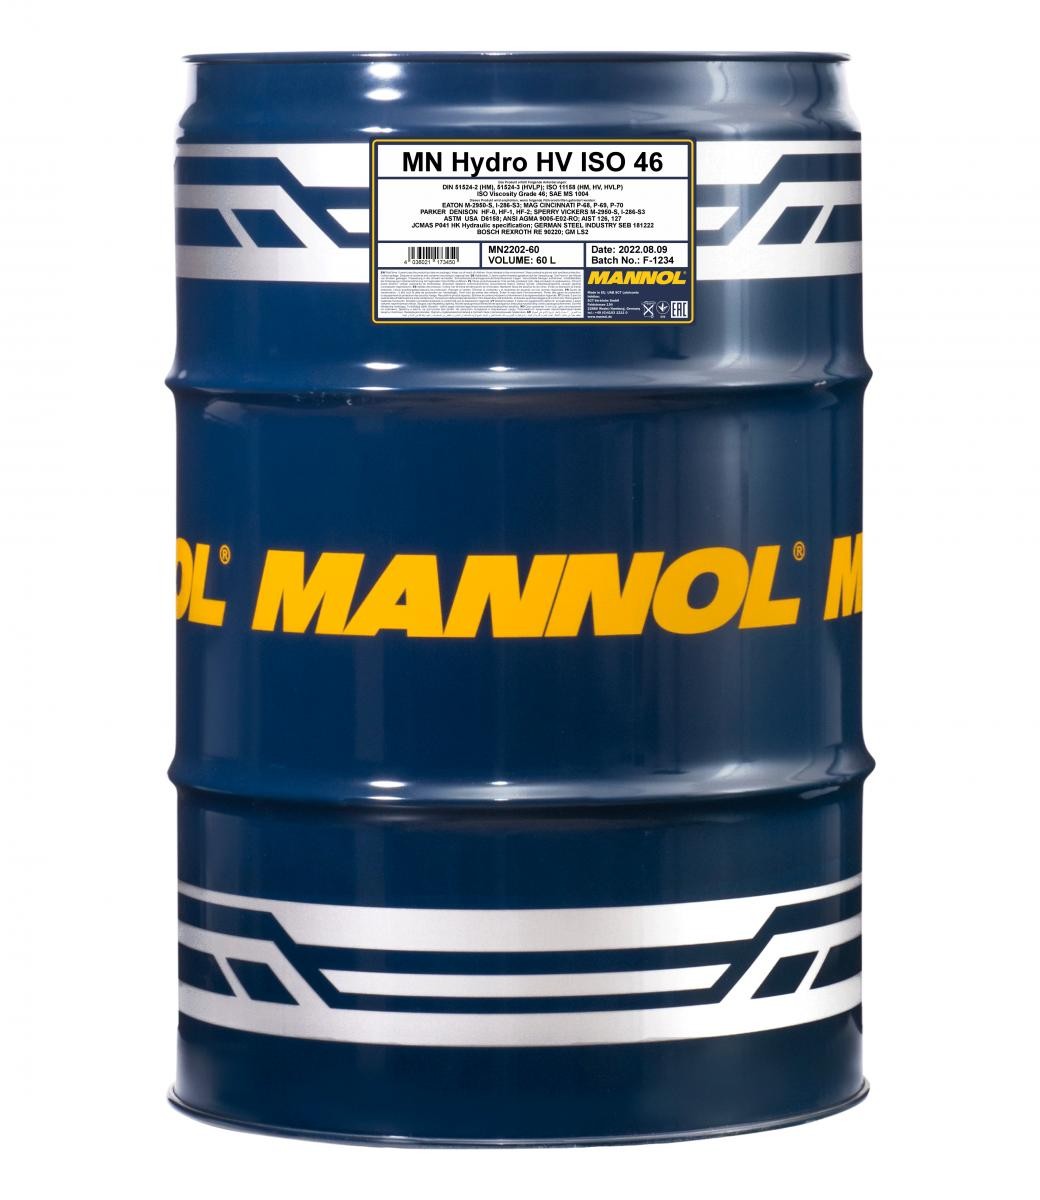 MANNOL Hydro HV ISO 46 Central Hydraulic Oil MN2202-60 buy